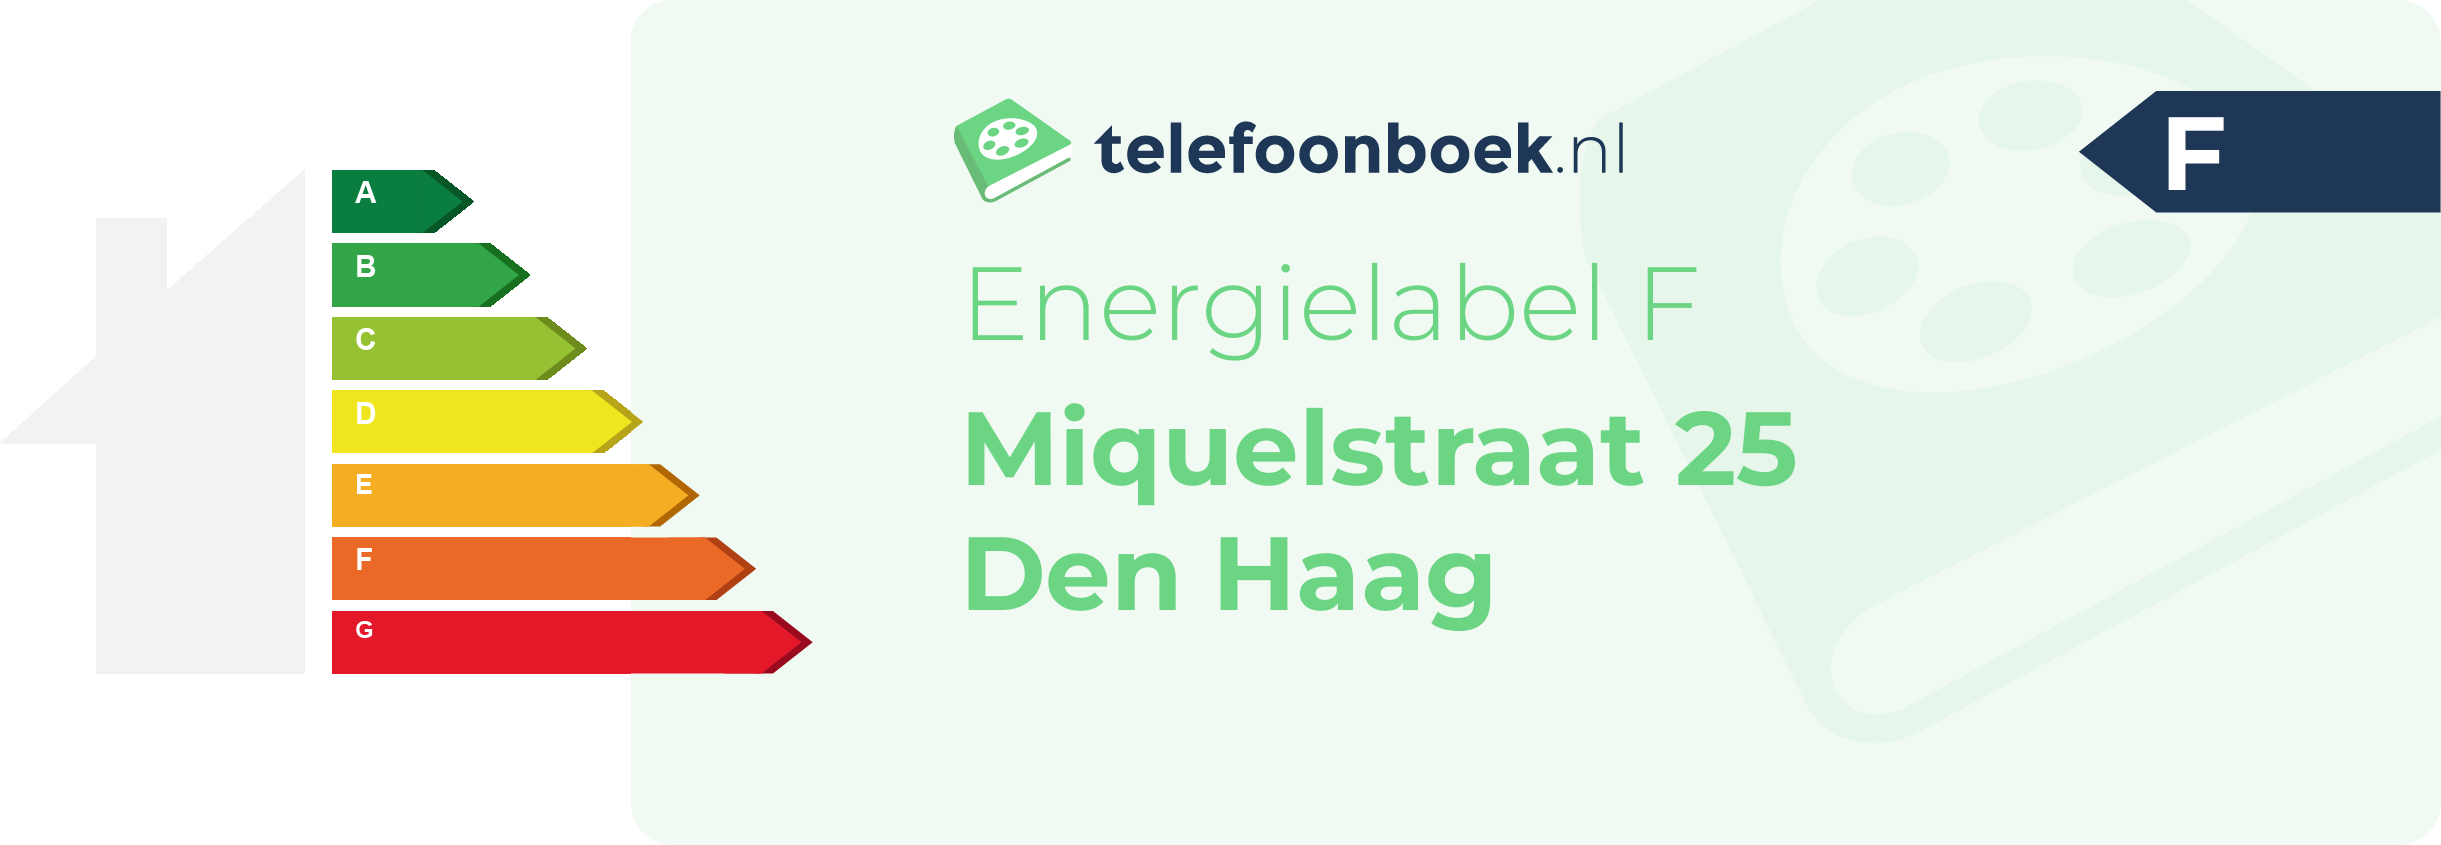 Energielabel Miquelstraat 25 Den Haag